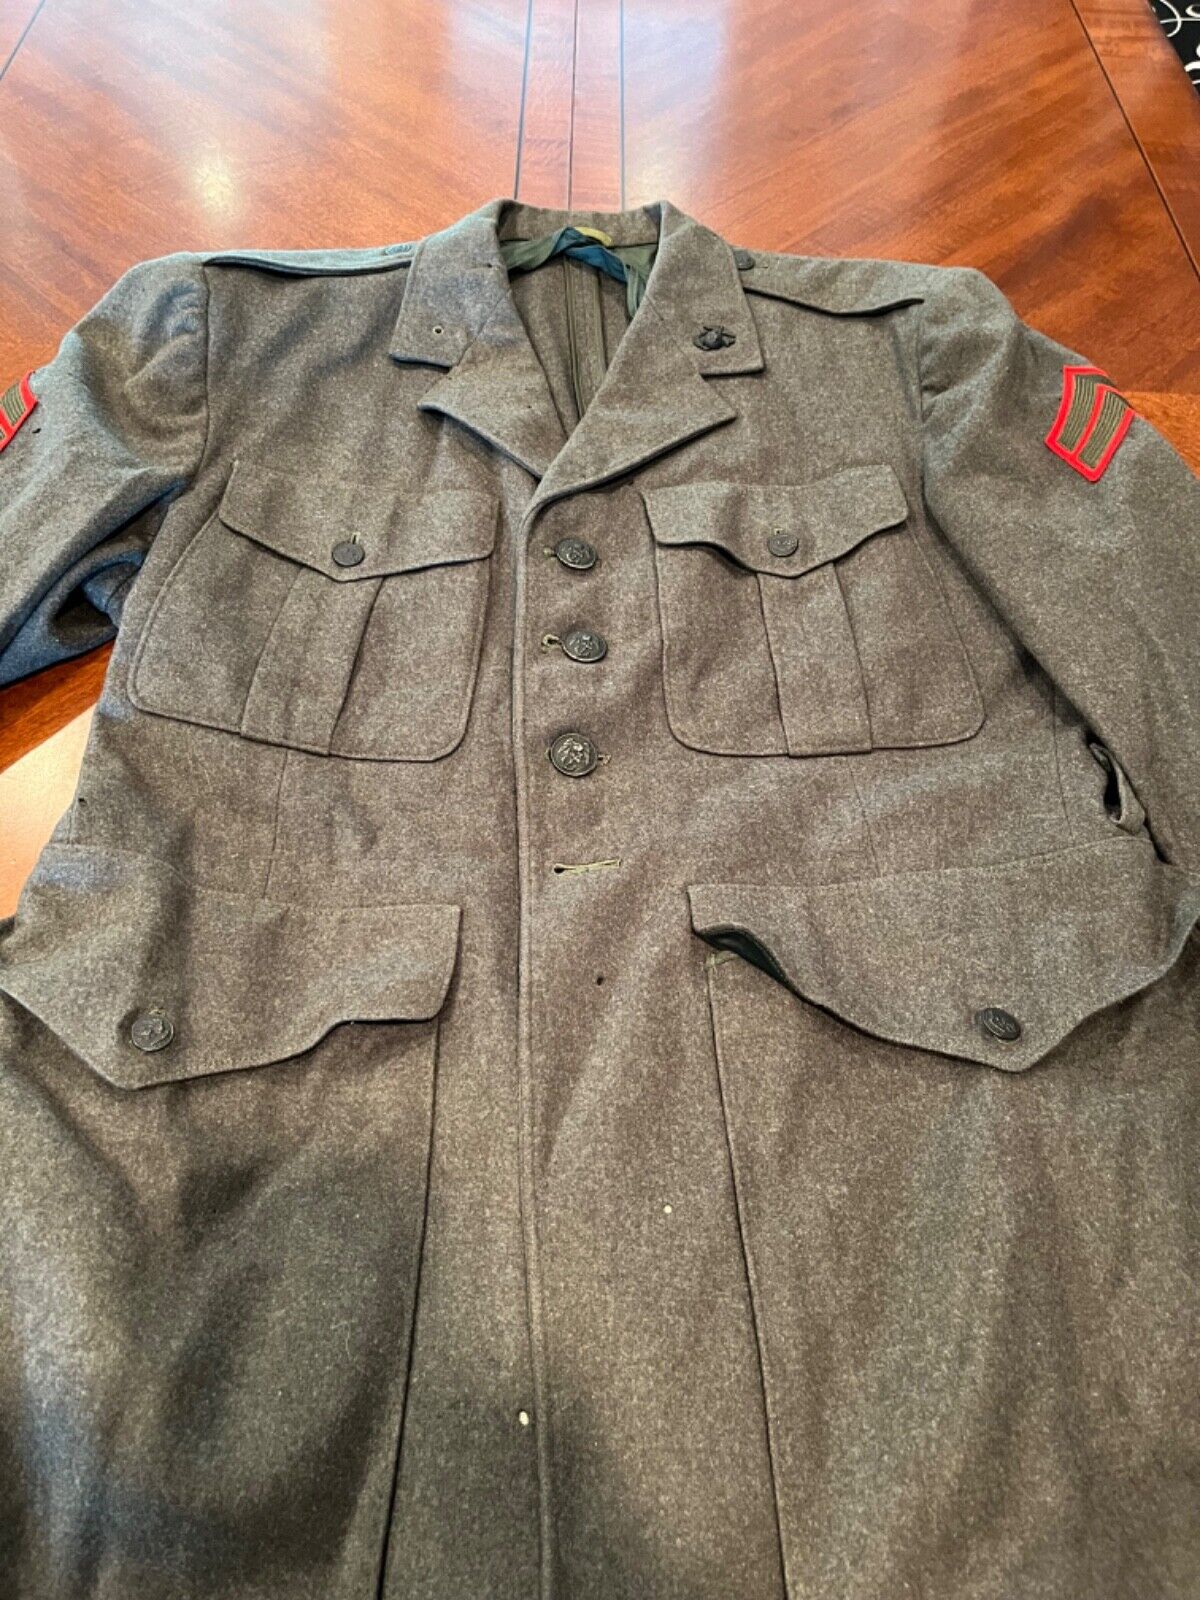 Vintage USMC Gray Official Uniform Jacket, Pants, Tie and Belt. pants size 36/34